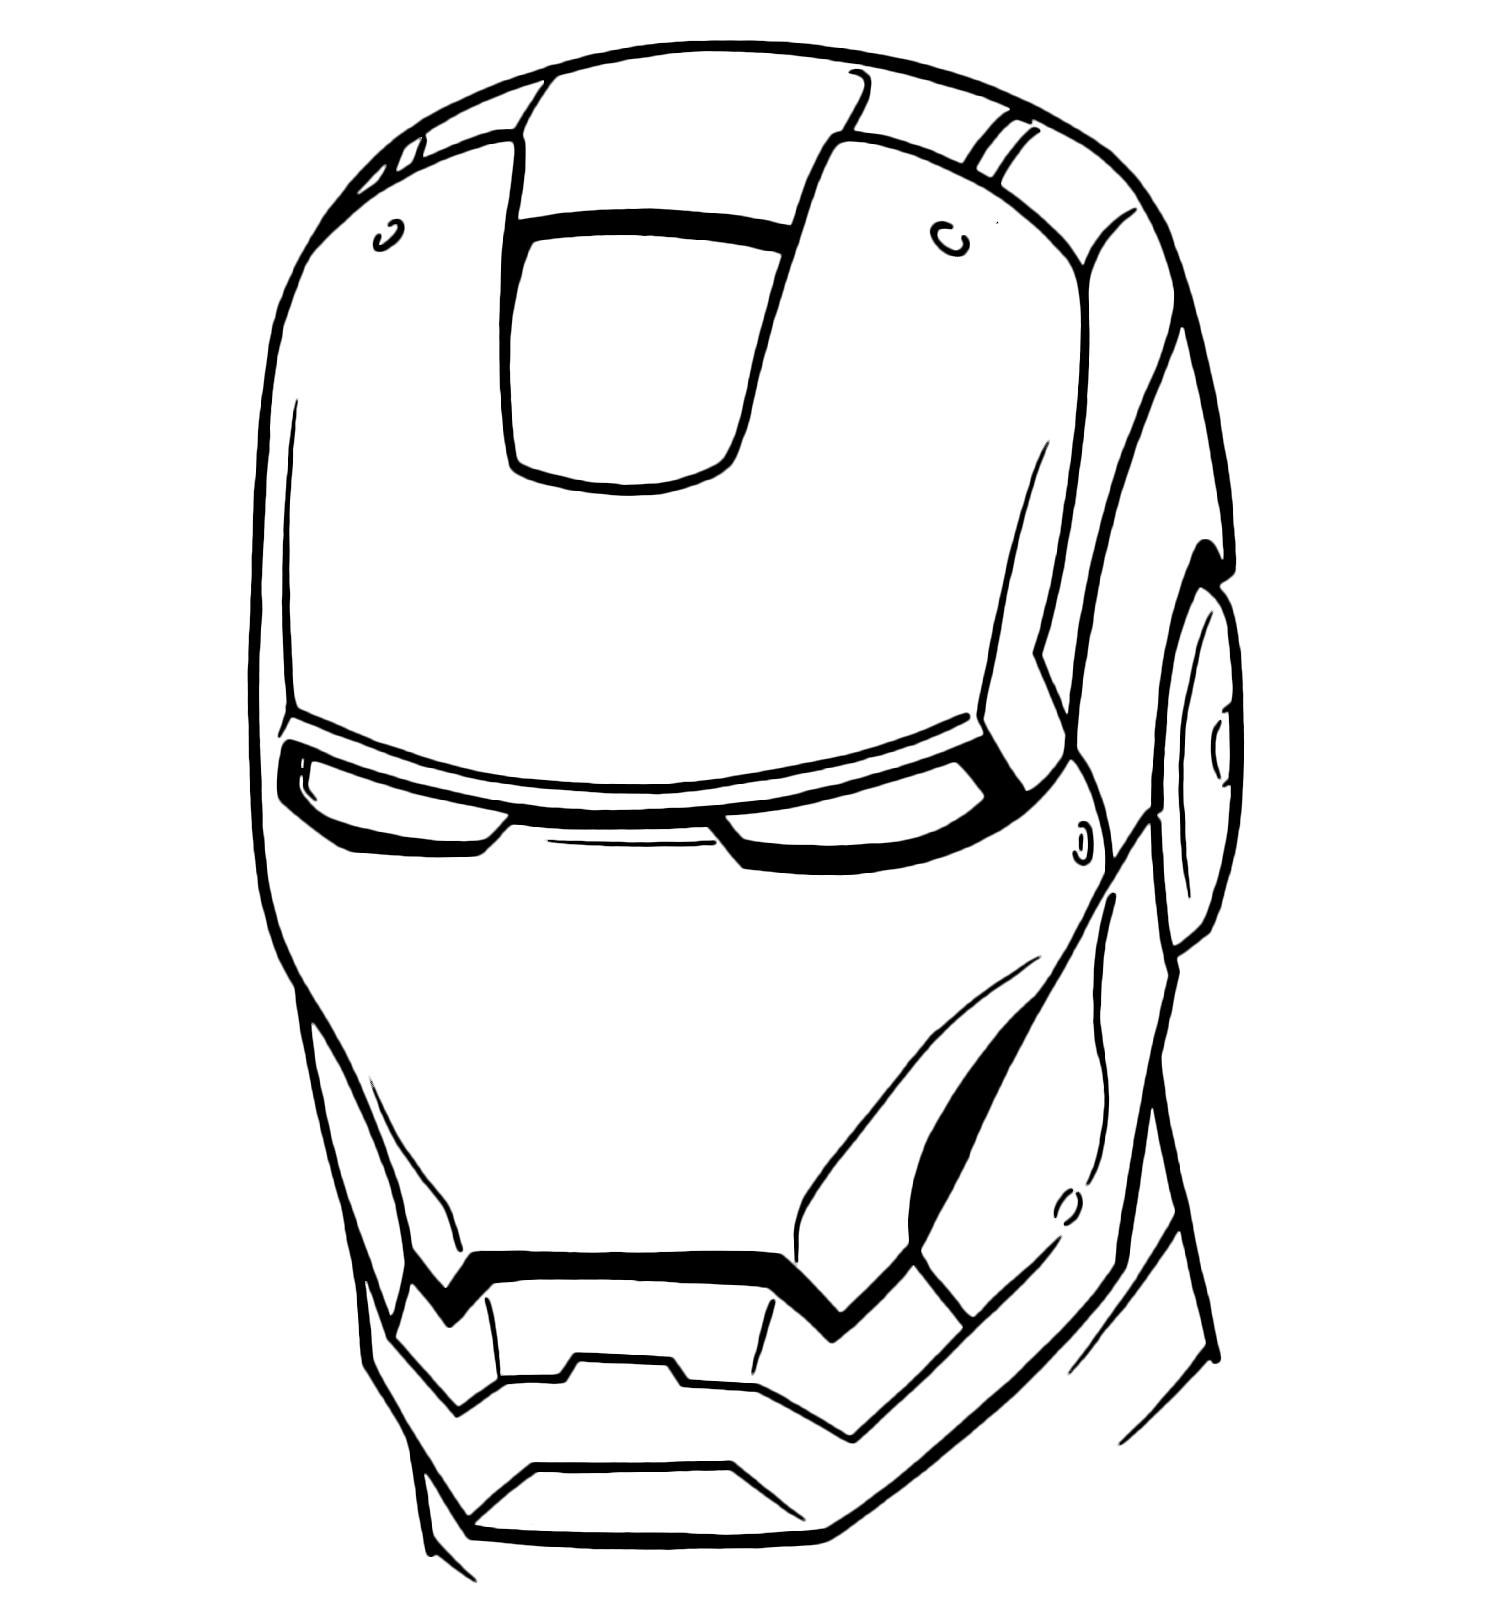 Iron Man - La maschera di Iron Man in primo piano